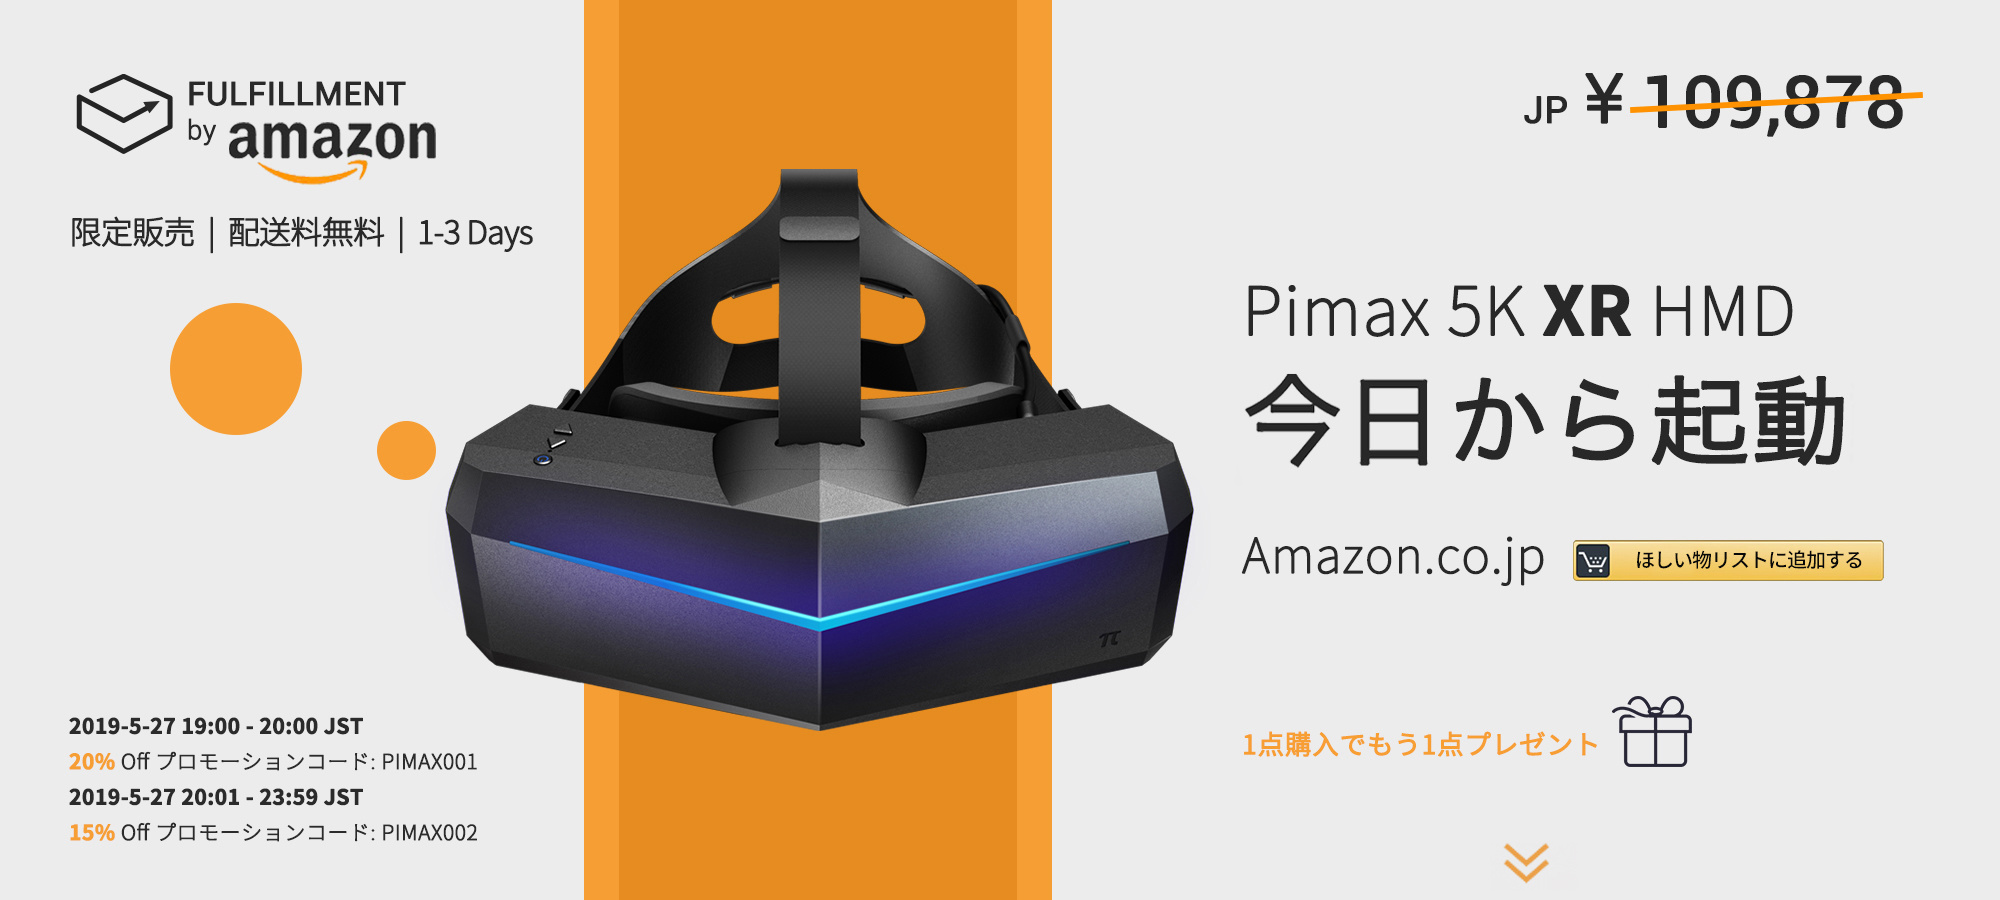 こんにちは、日本 | New Listing of Pimax 5K XR VR Headset (OLED